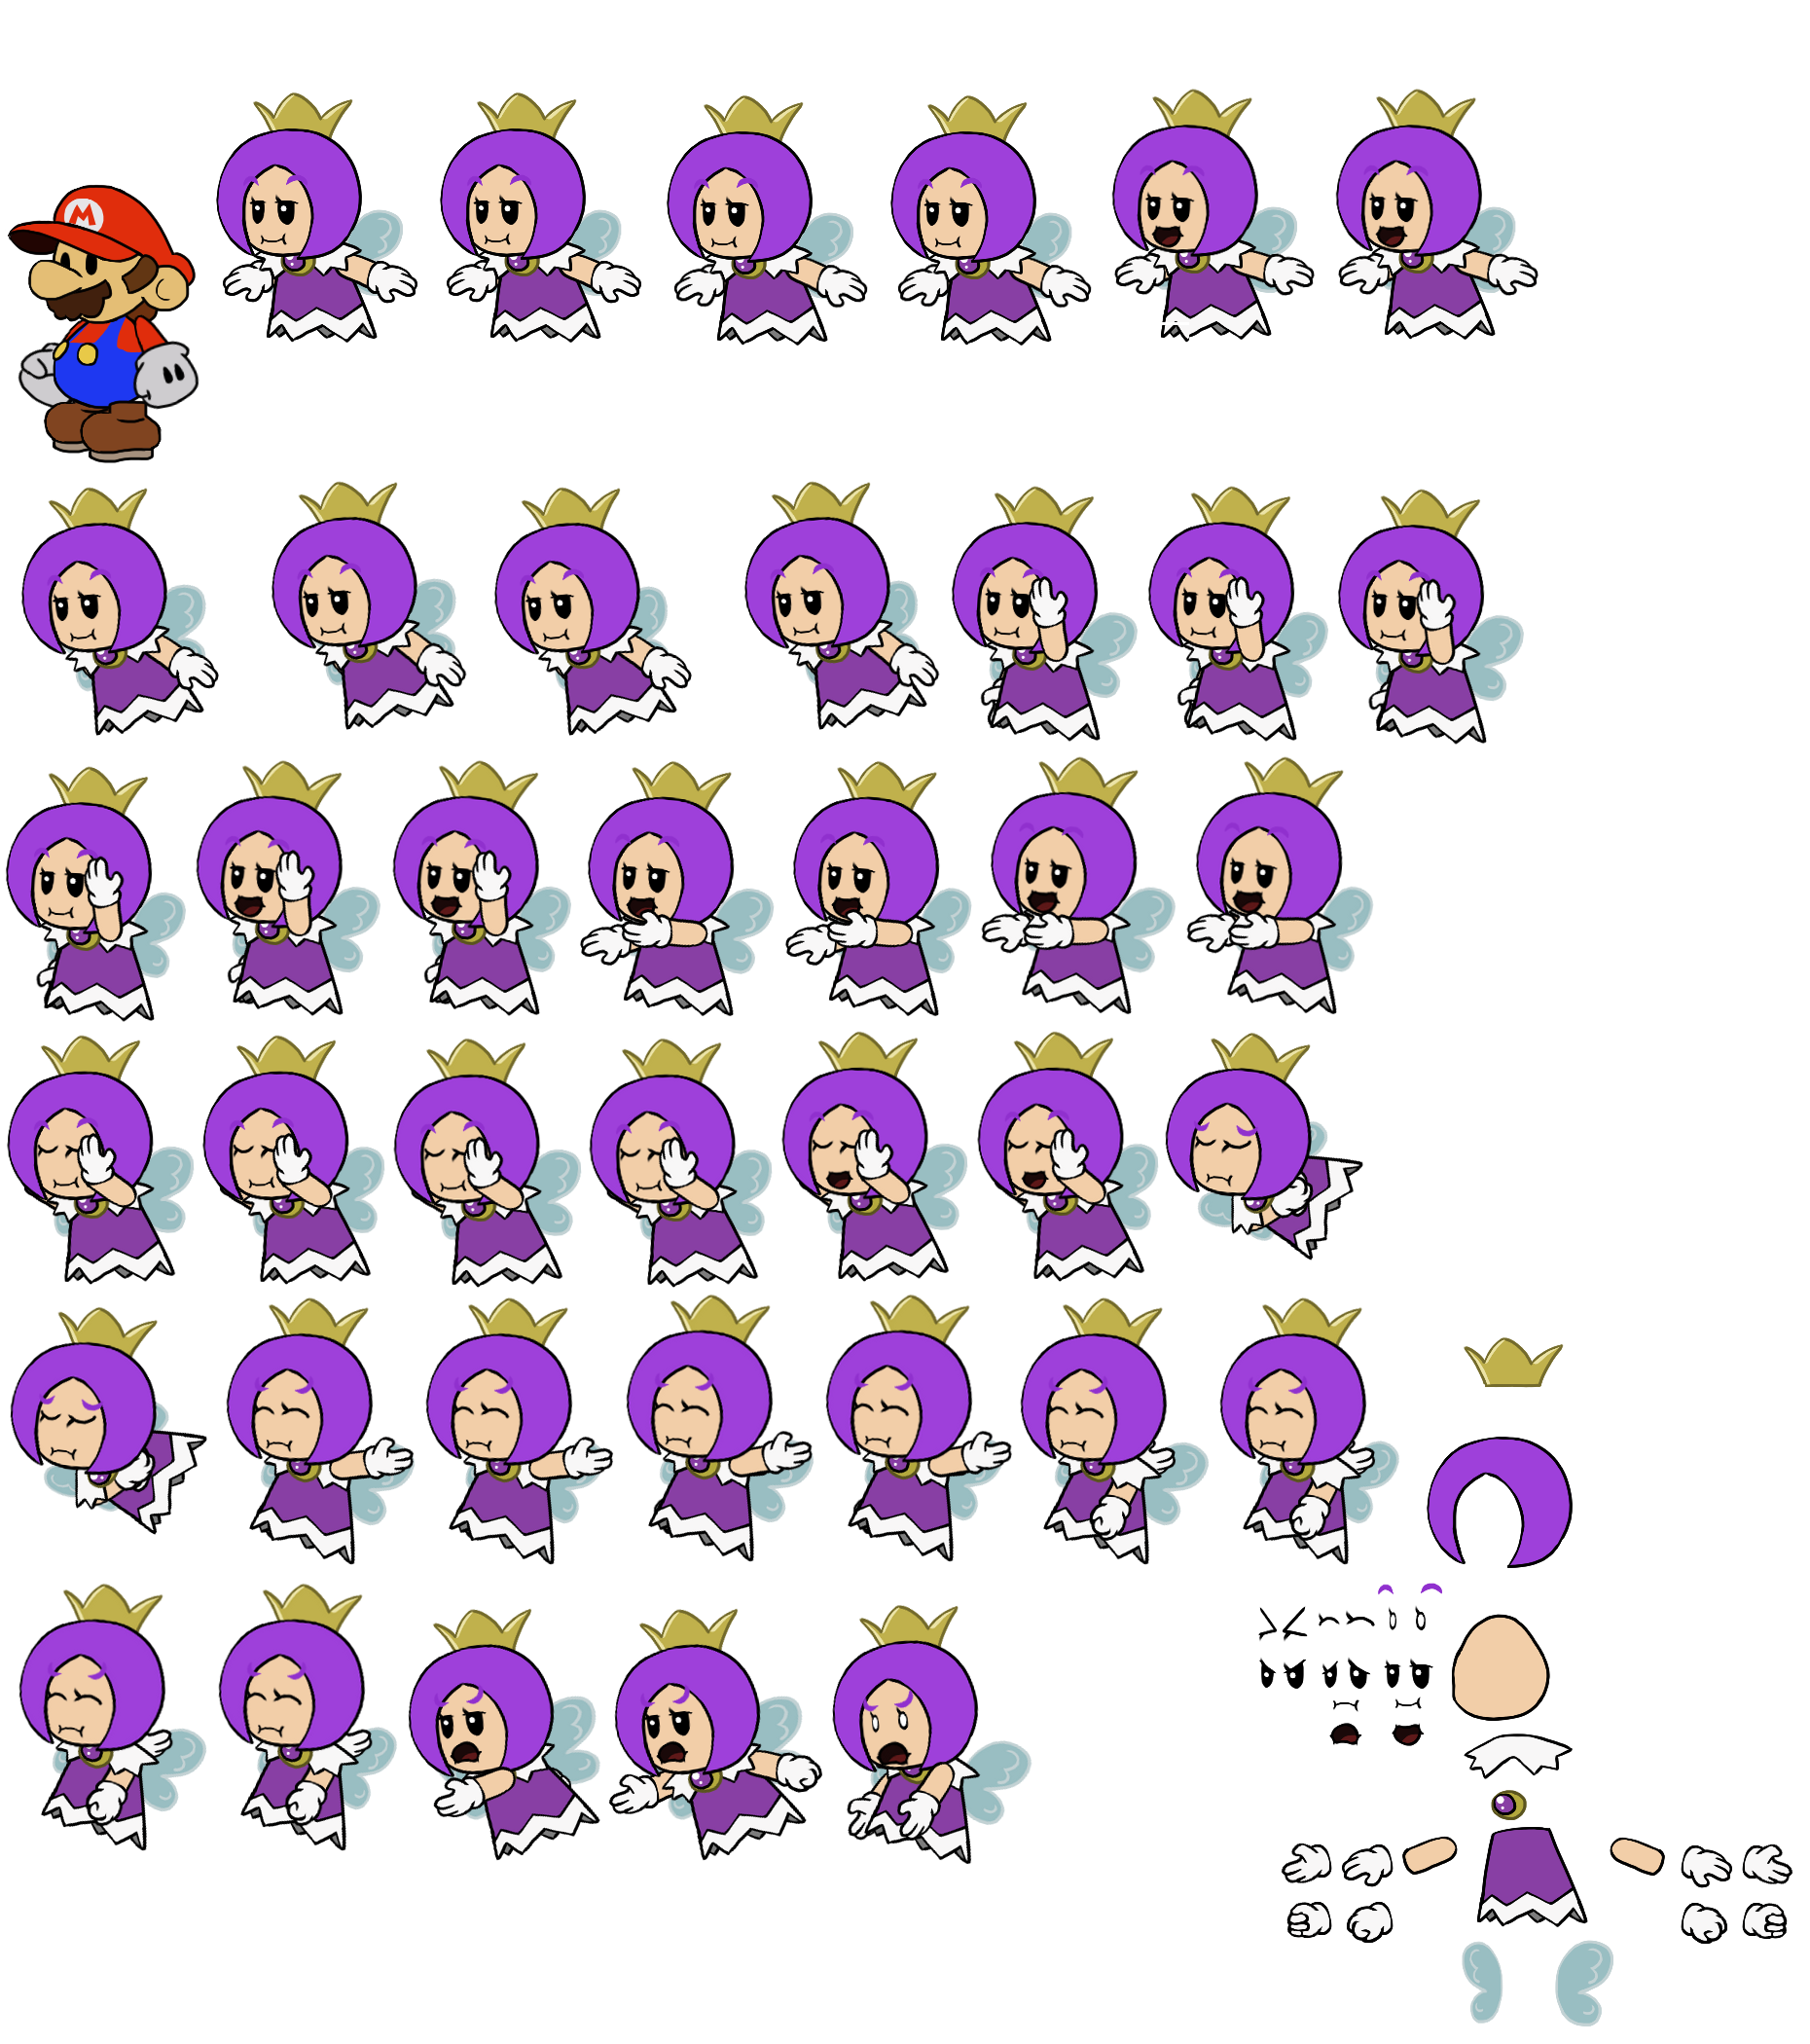 Mario Customs - Purple Sprixie Princess (Paper Mario-Style)